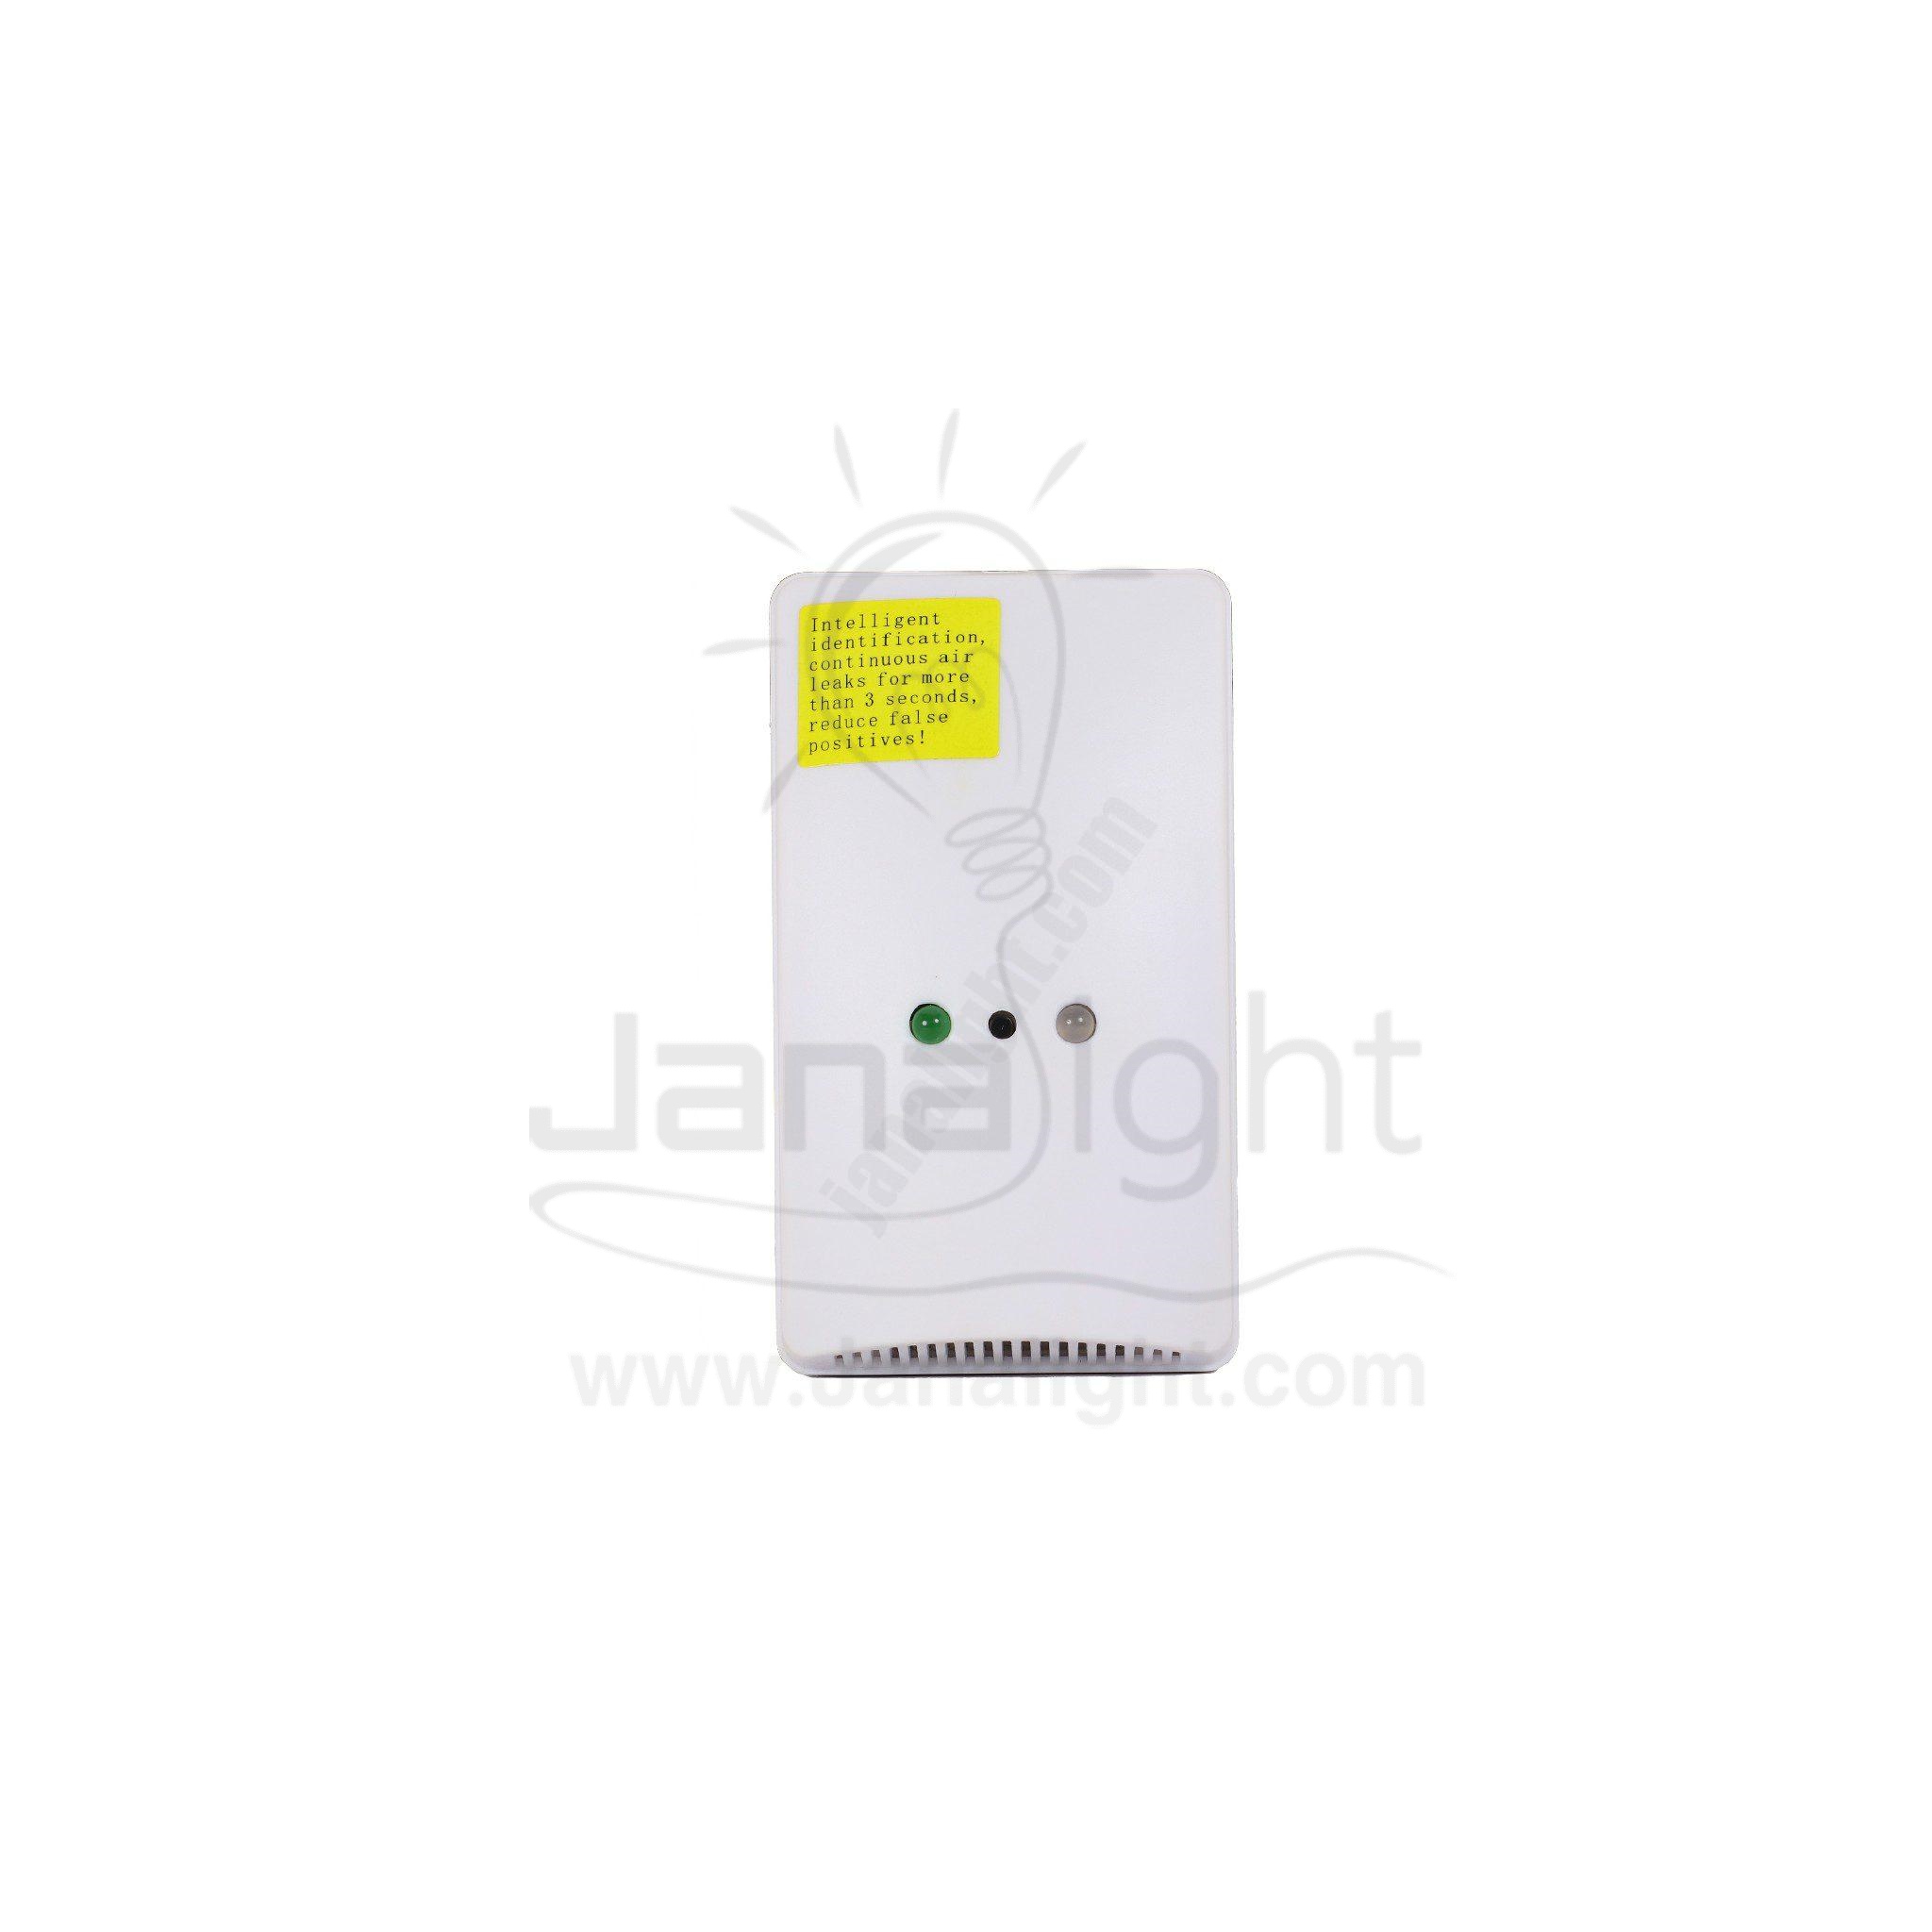 حساس غاز واوكسيد الكربون وايرلس سونوف SF038 Sonoff wifi gas detector